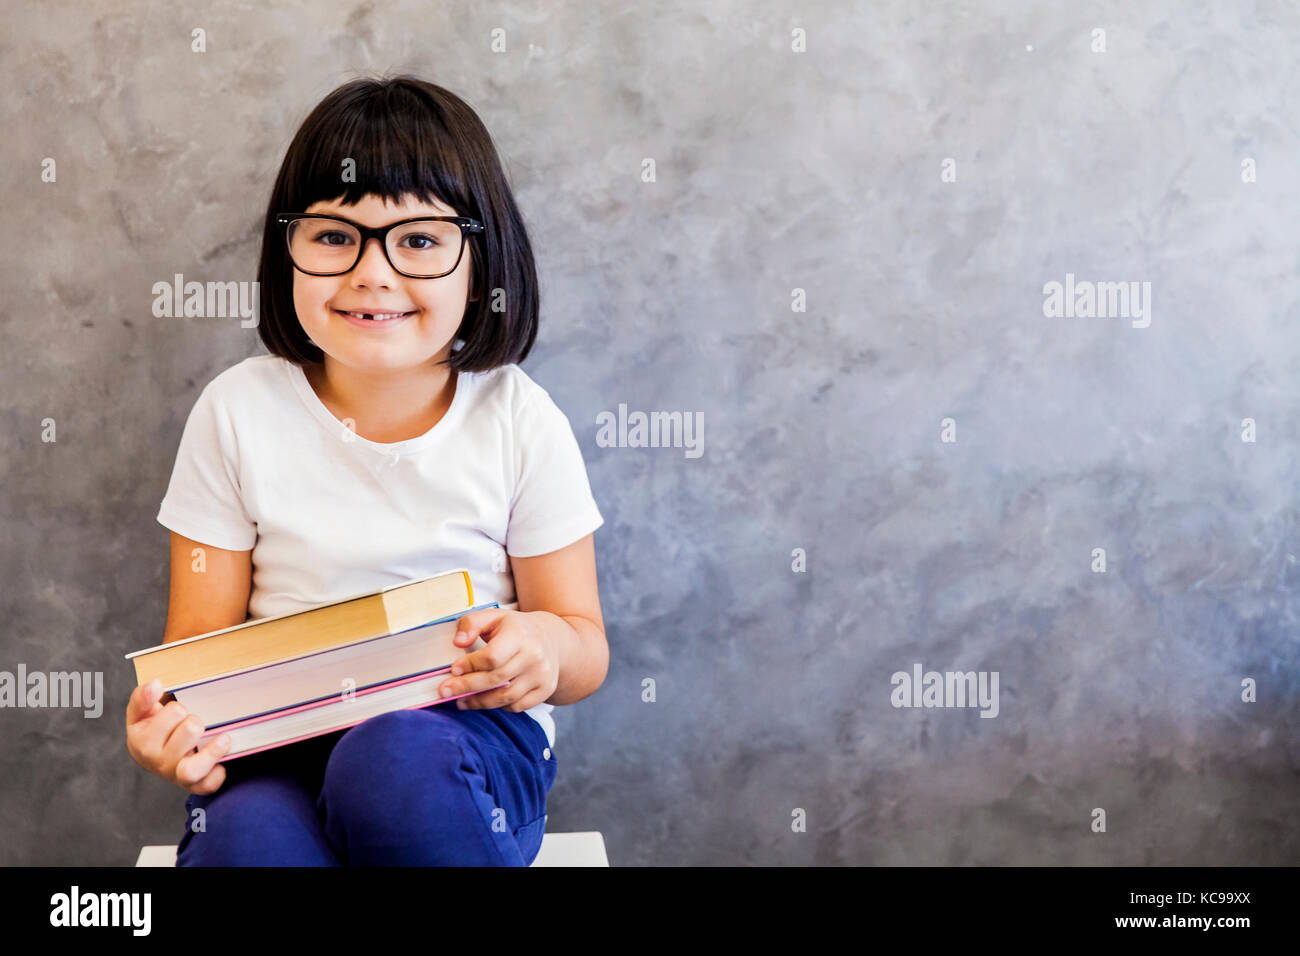 Jolie petite fille aux cheveux noir verres holding books par le mur Banque D'Images